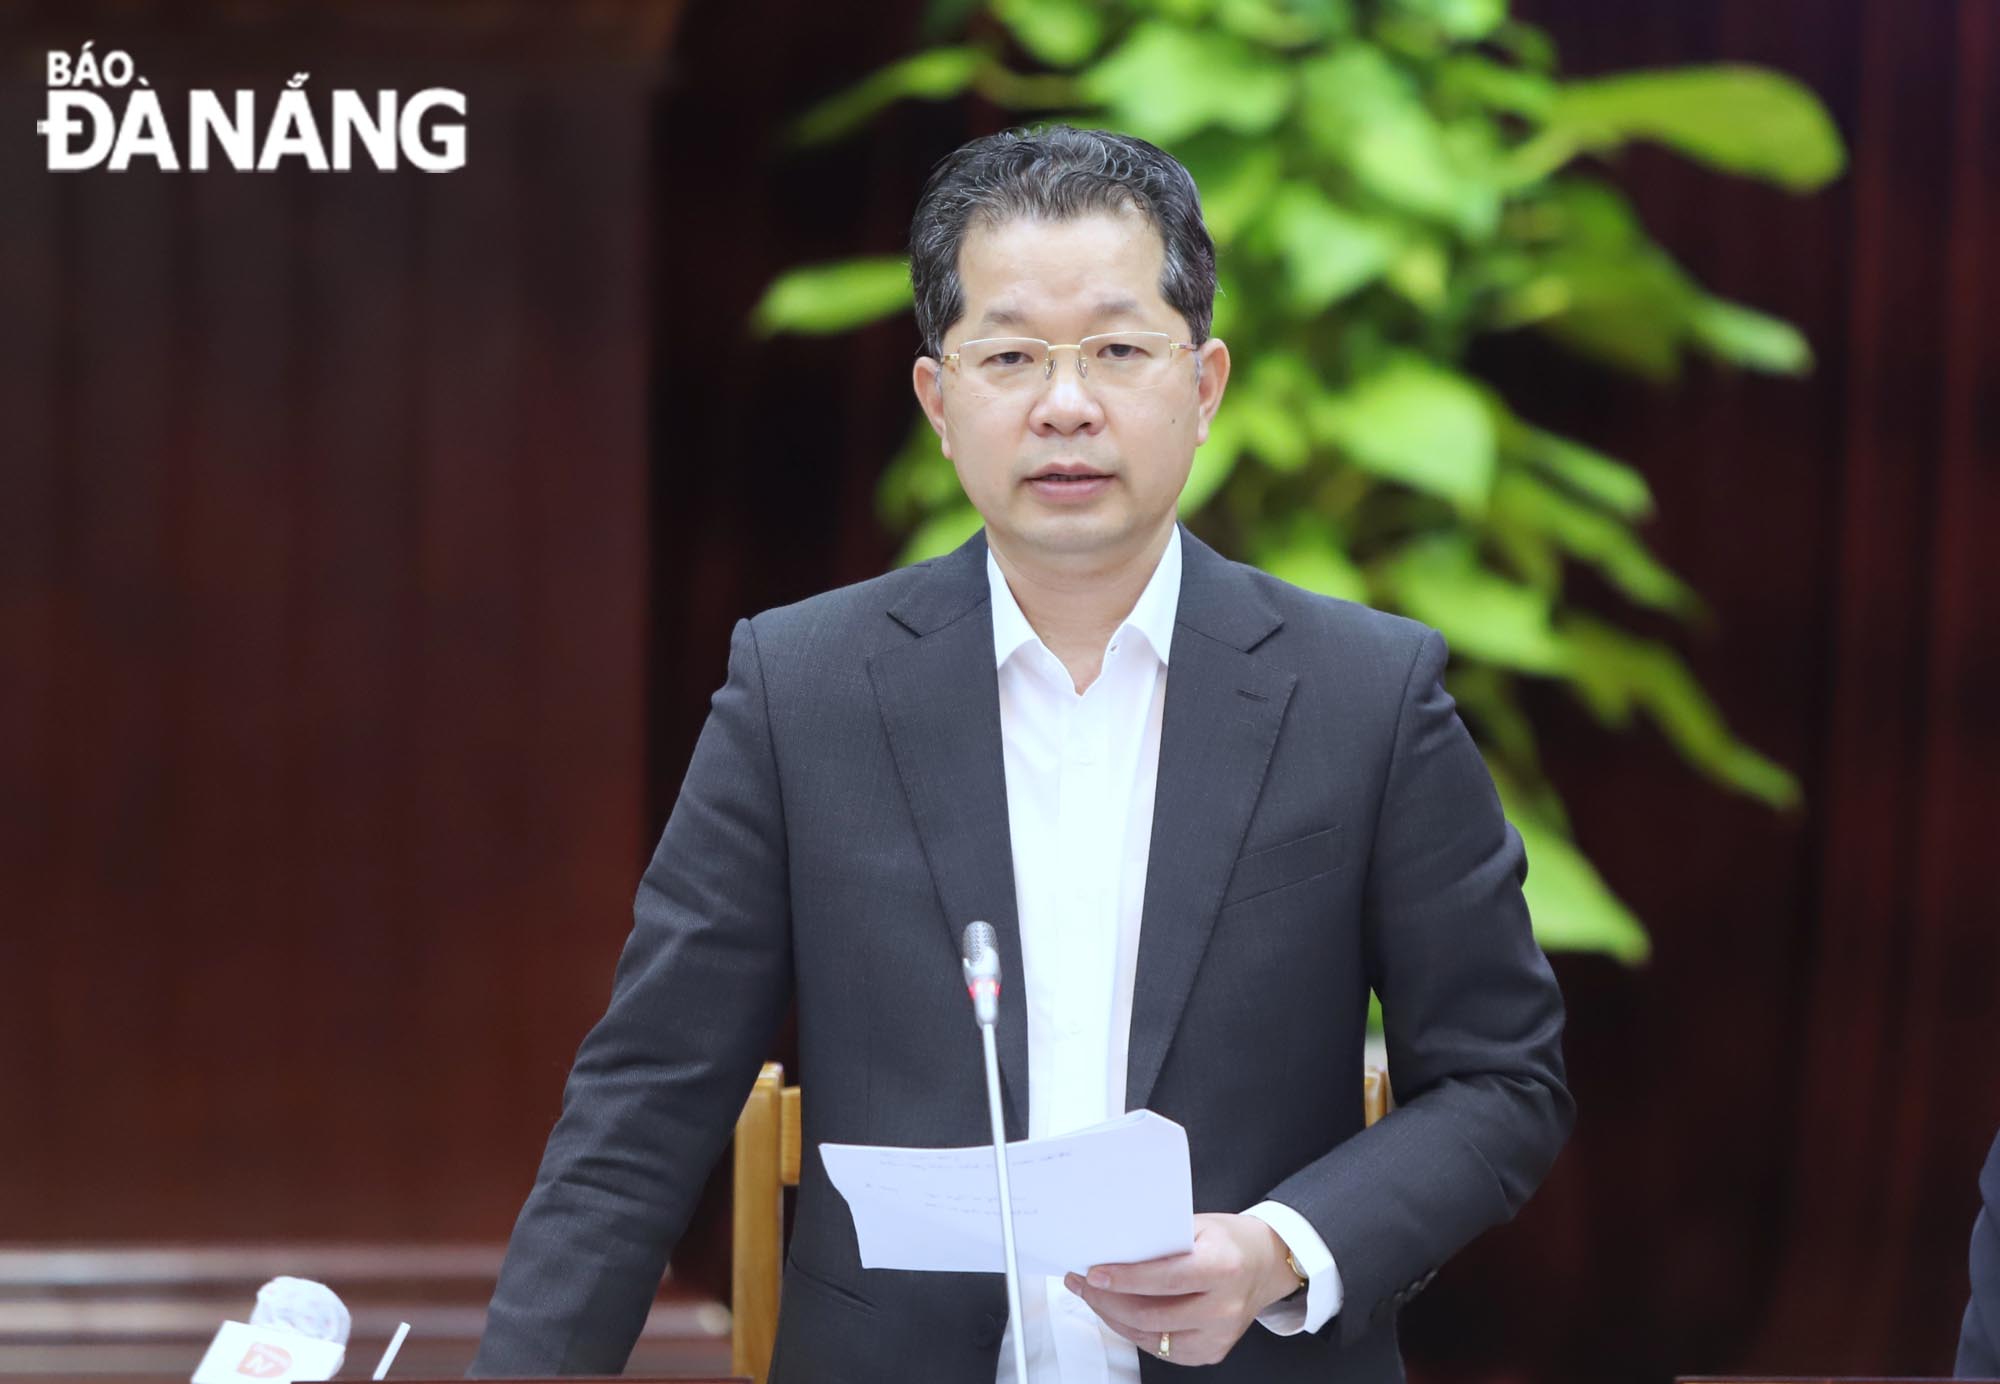 Bí thư Thành ủy Nguyễn Văn Quảng phát biểu kết luận buổi làm việc. Ảnh: NGỌC PHÚ